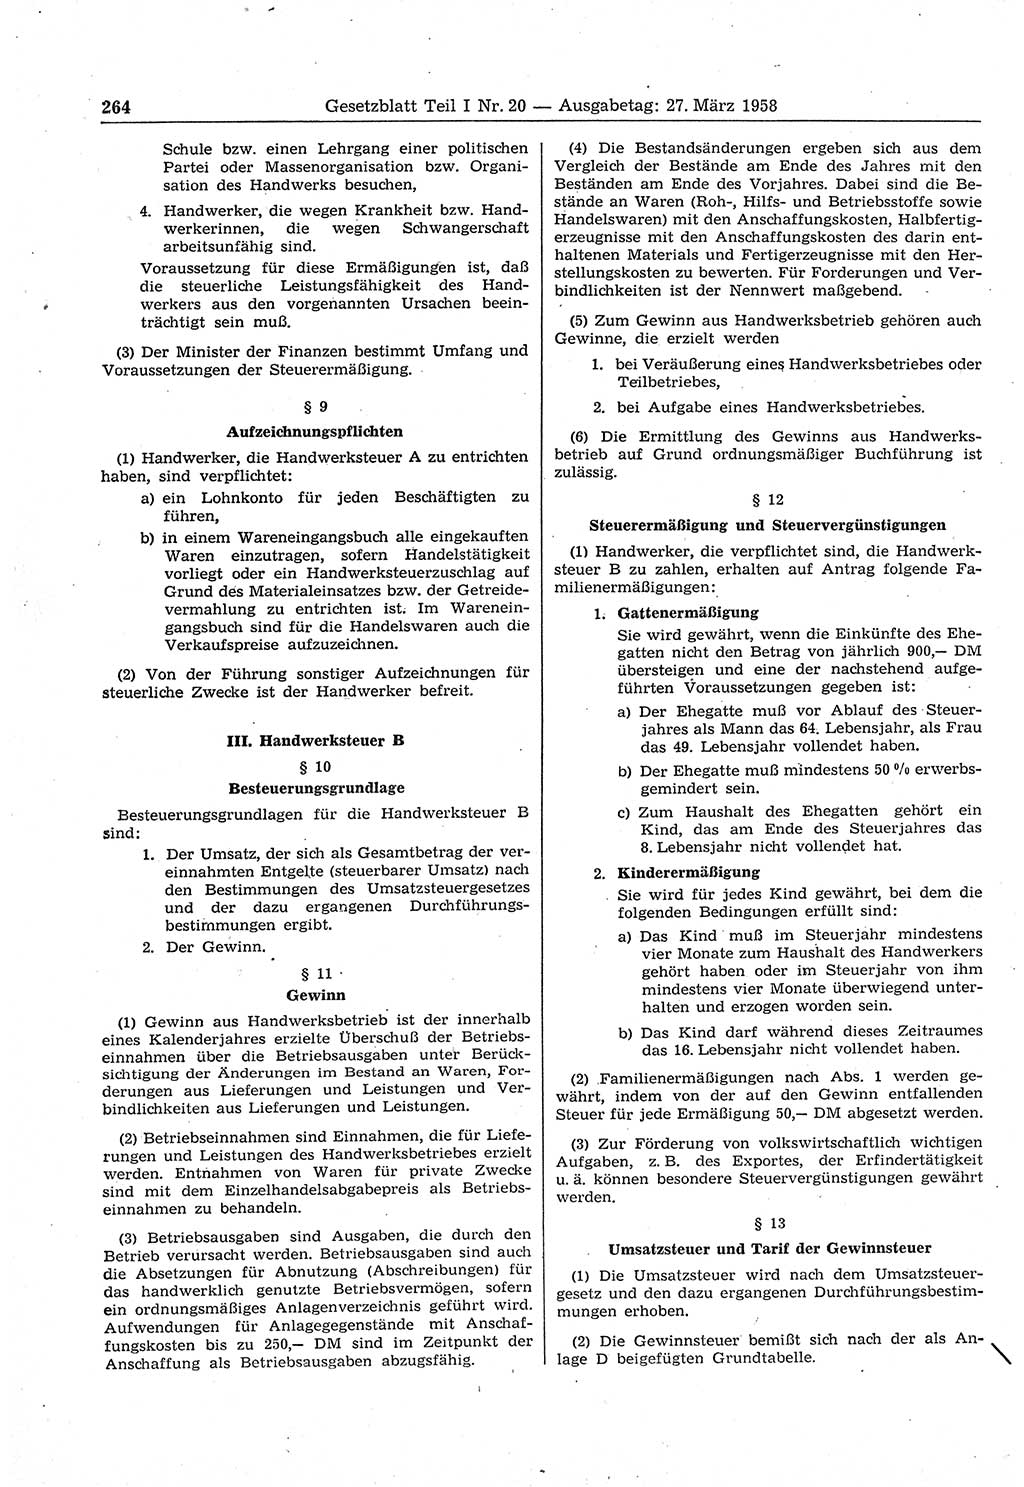 Gesetzblatt (GBl.) der Deutschen Demokratischen Republik (DDR) Teil Ⅰ 1958, Seite 264 (GBl. DDR Ⅰ 1958, S. 264)